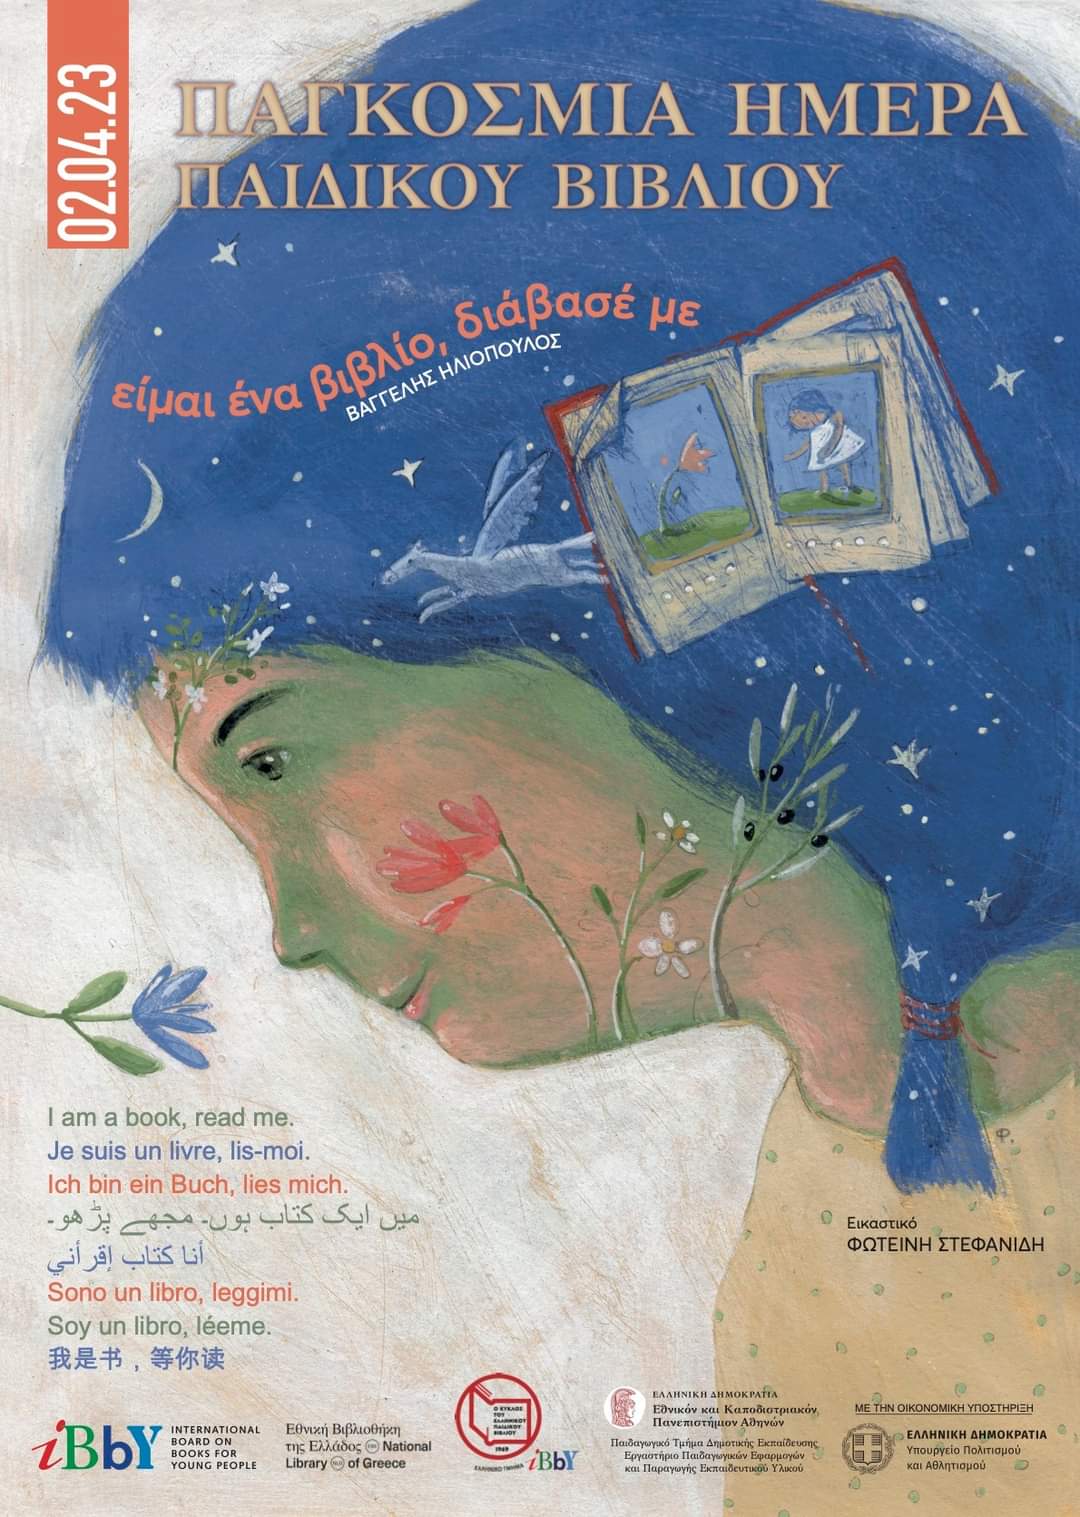 Παγκόσμια Ημέρα Παιδικού Βιβλίου: Οι Βιβλιοθήκες του Δήμου Χανίων γιορτάζουν!